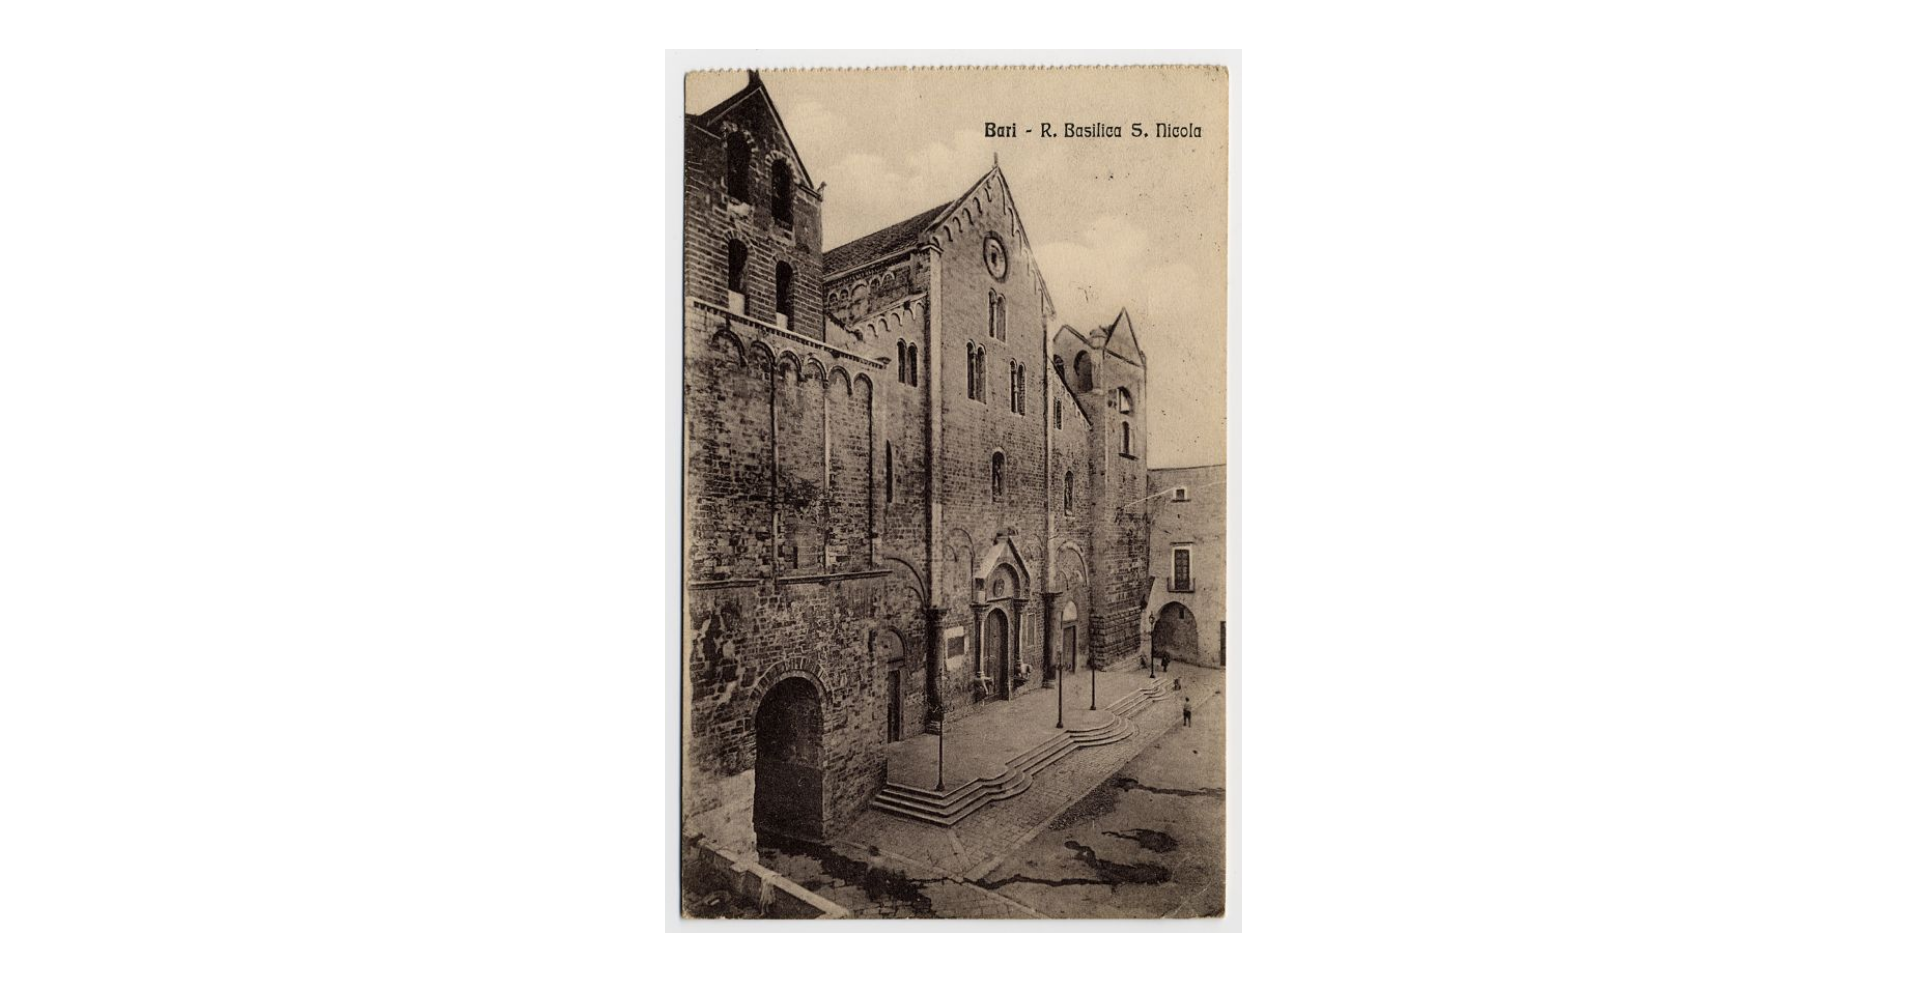 Fotografo non identificato, Bari - Basilica di S. Nicola di Bari, 1915, cartolina, FFC013989